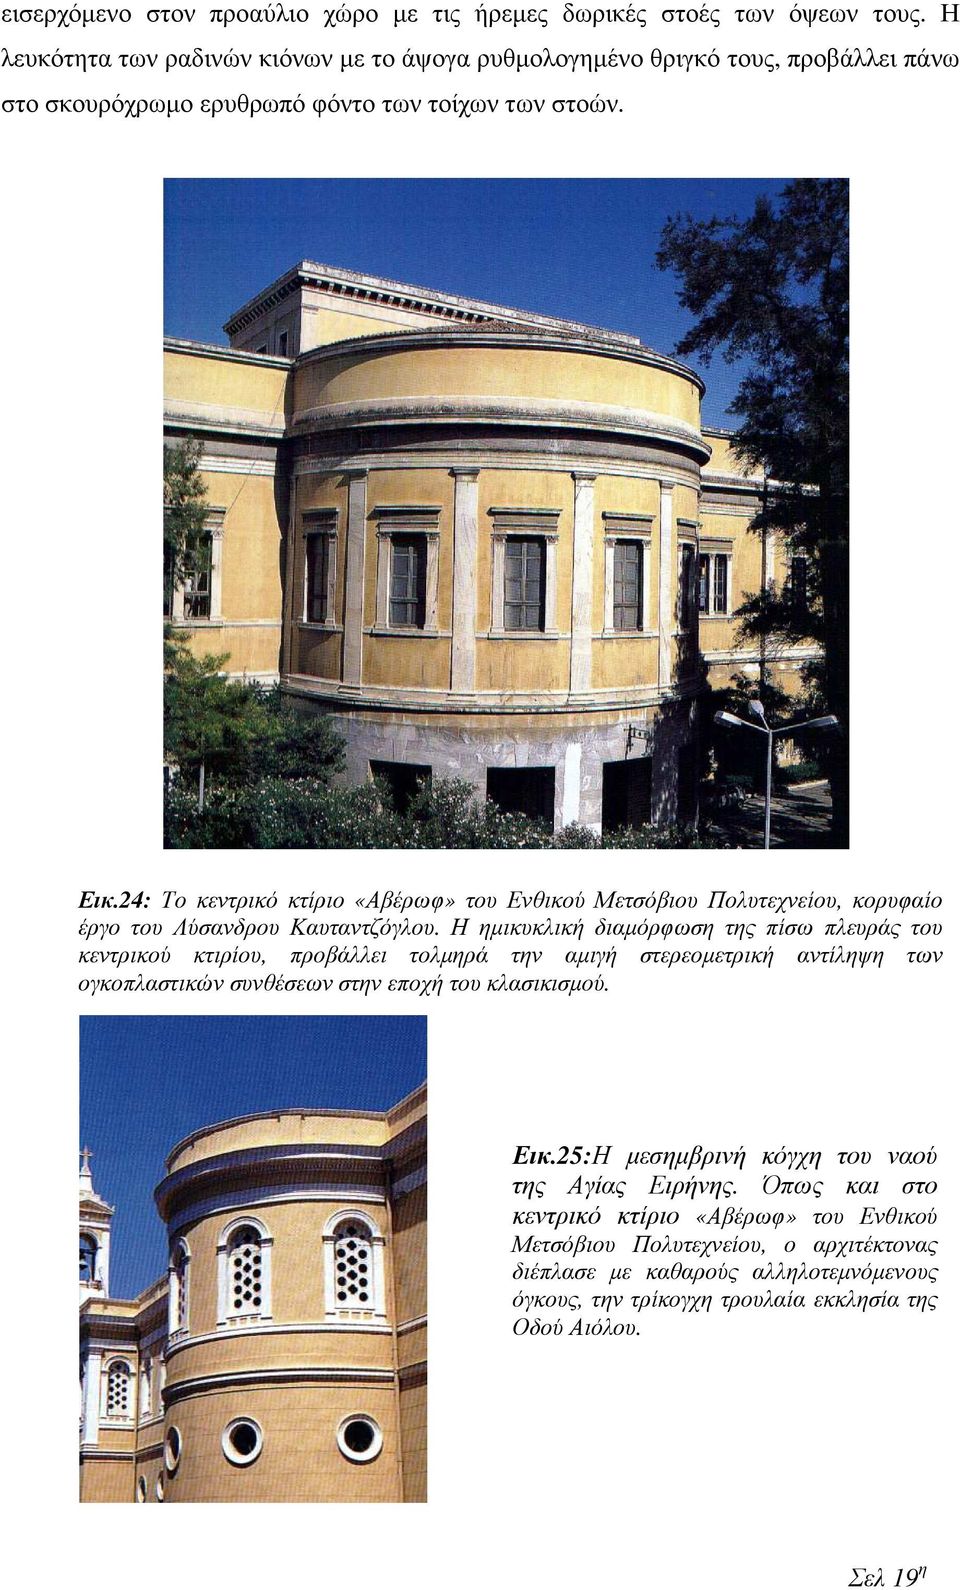 24: Το κεντρικό κτίριο «Αβέρωφ» του Ενθικού Μετσόβιου Πολυτεχνείου, κορυφαίο έργο του Λύσανδρου Καυταντζόγλου.